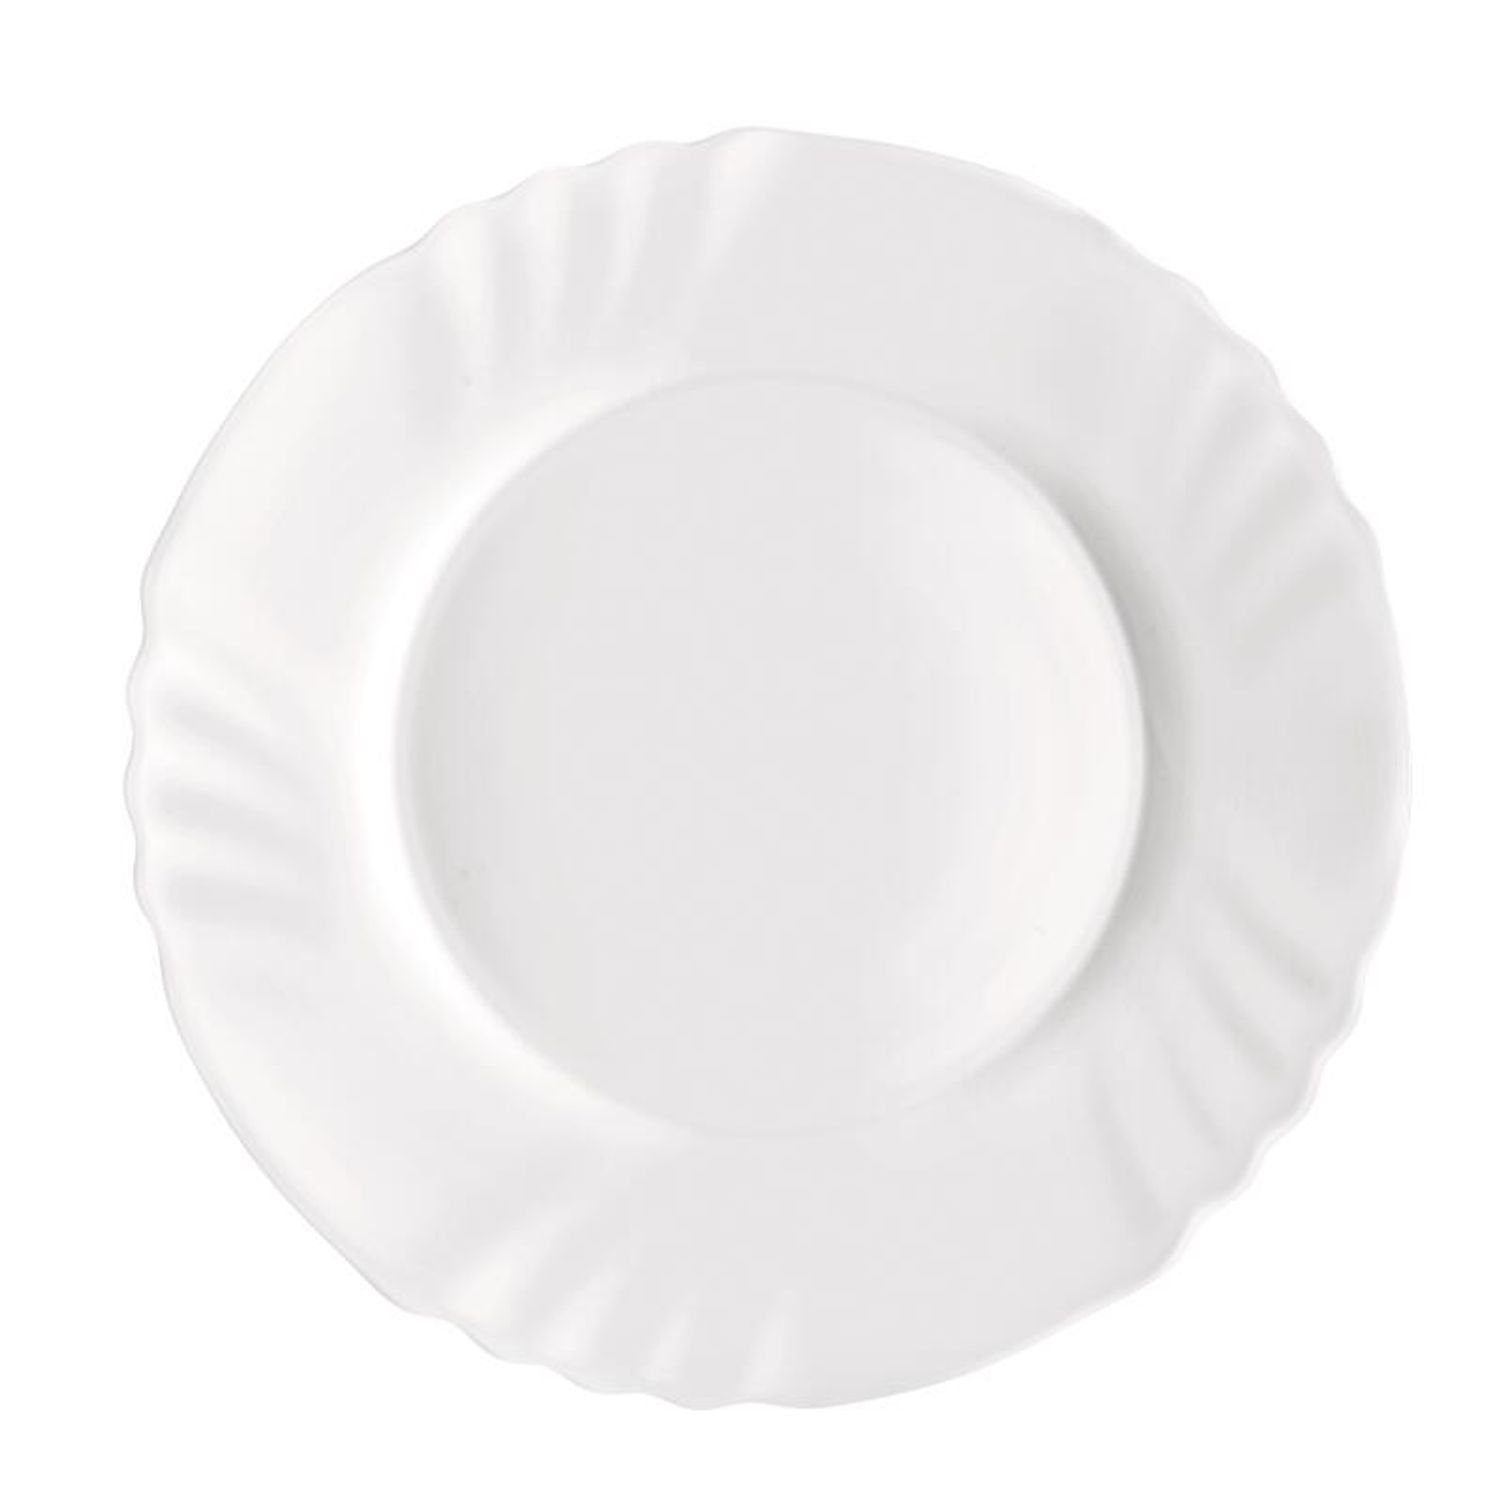 Flach Rocco Nach Essen Teller Geschirr Speisen Weiß 36x Bormioli Servierplatte Dessertteller